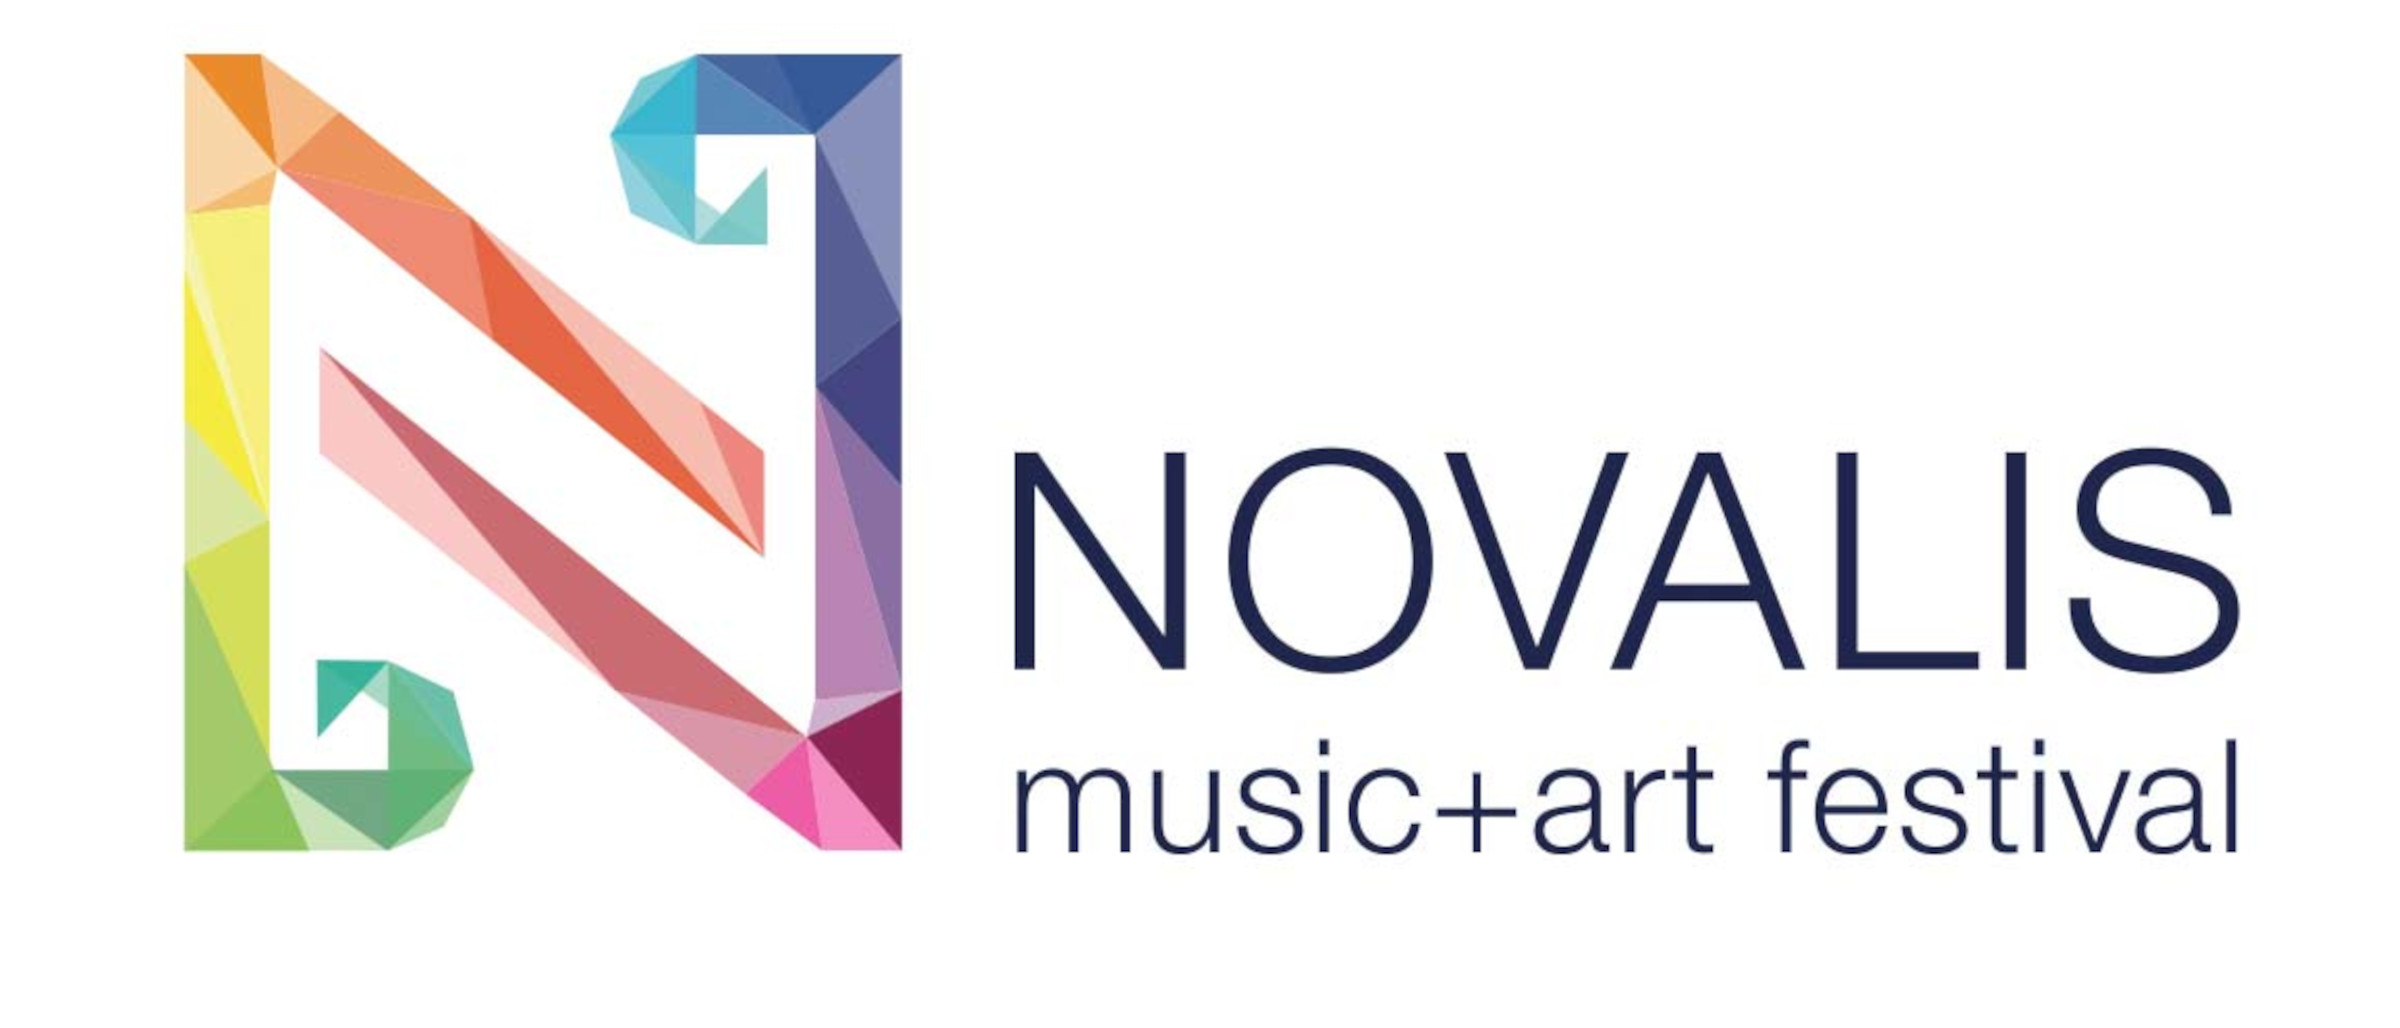 Logo Novalis music + art festival